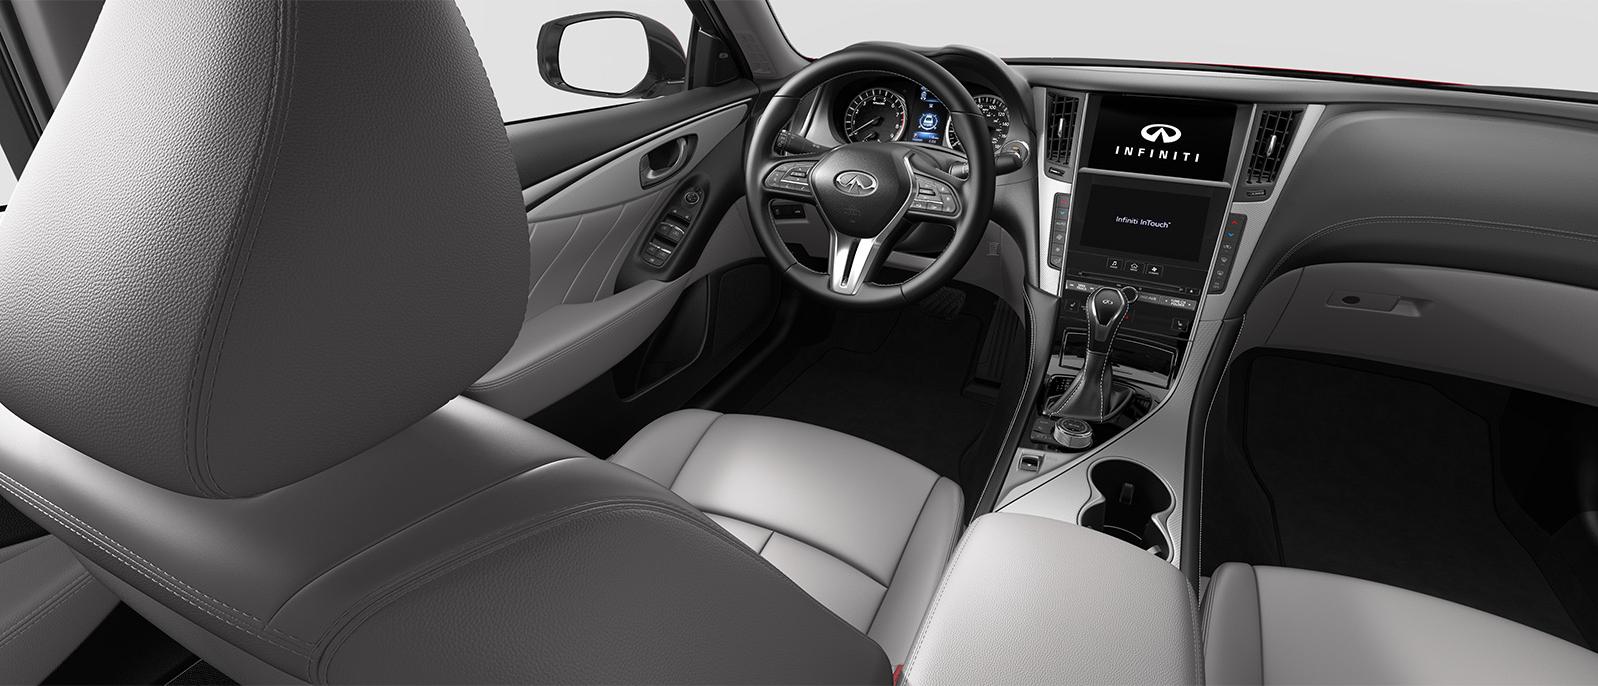 INFINITI Q50 Luxe trim interior in Stone color scheme.